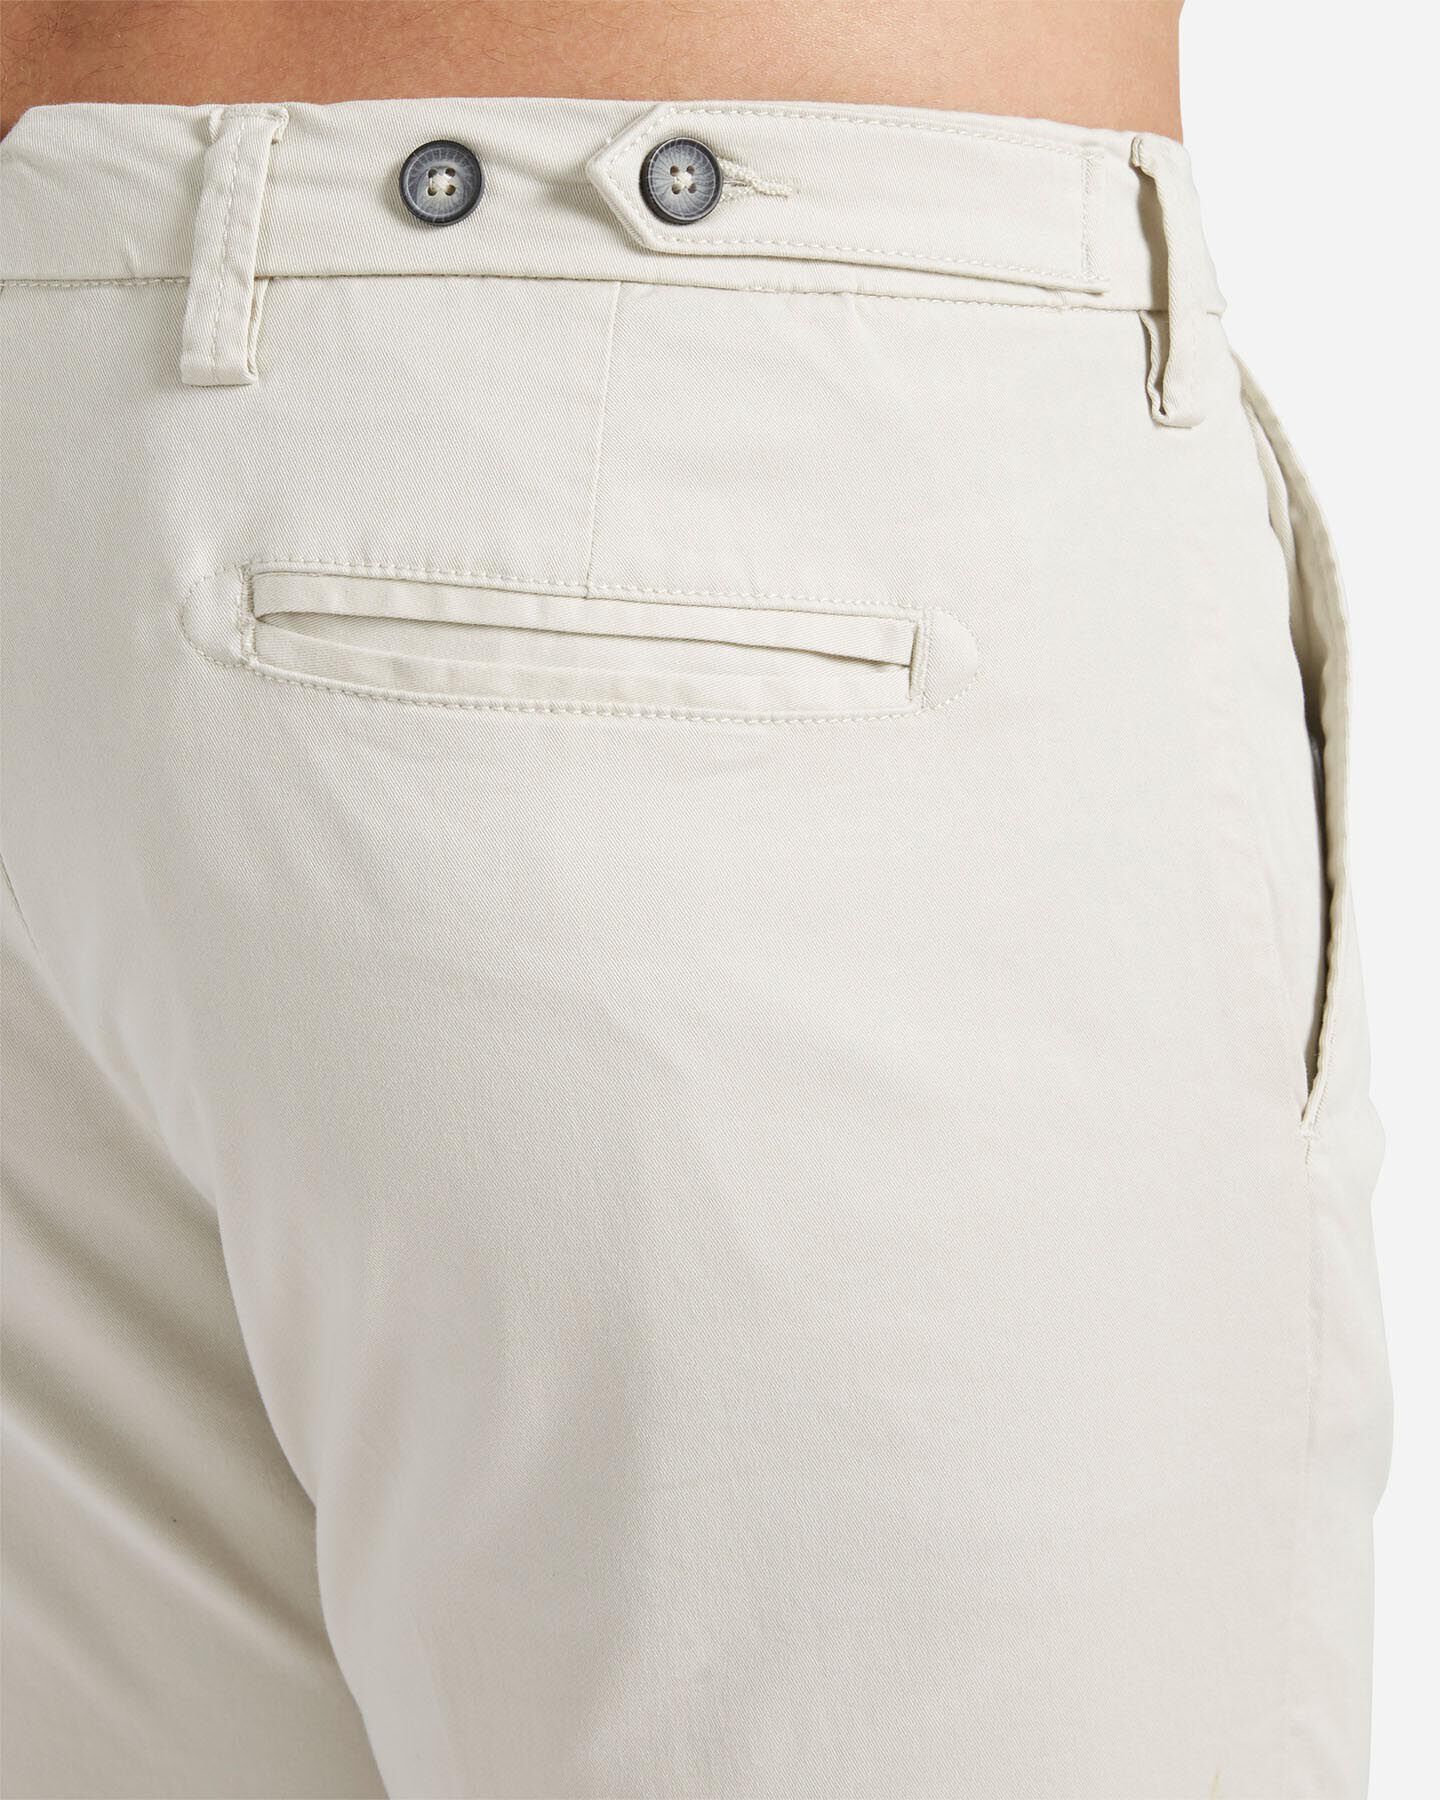  Pantalone BEST COMPANY MONTENAPOLEONE M S4131665|006|44 scatto 3